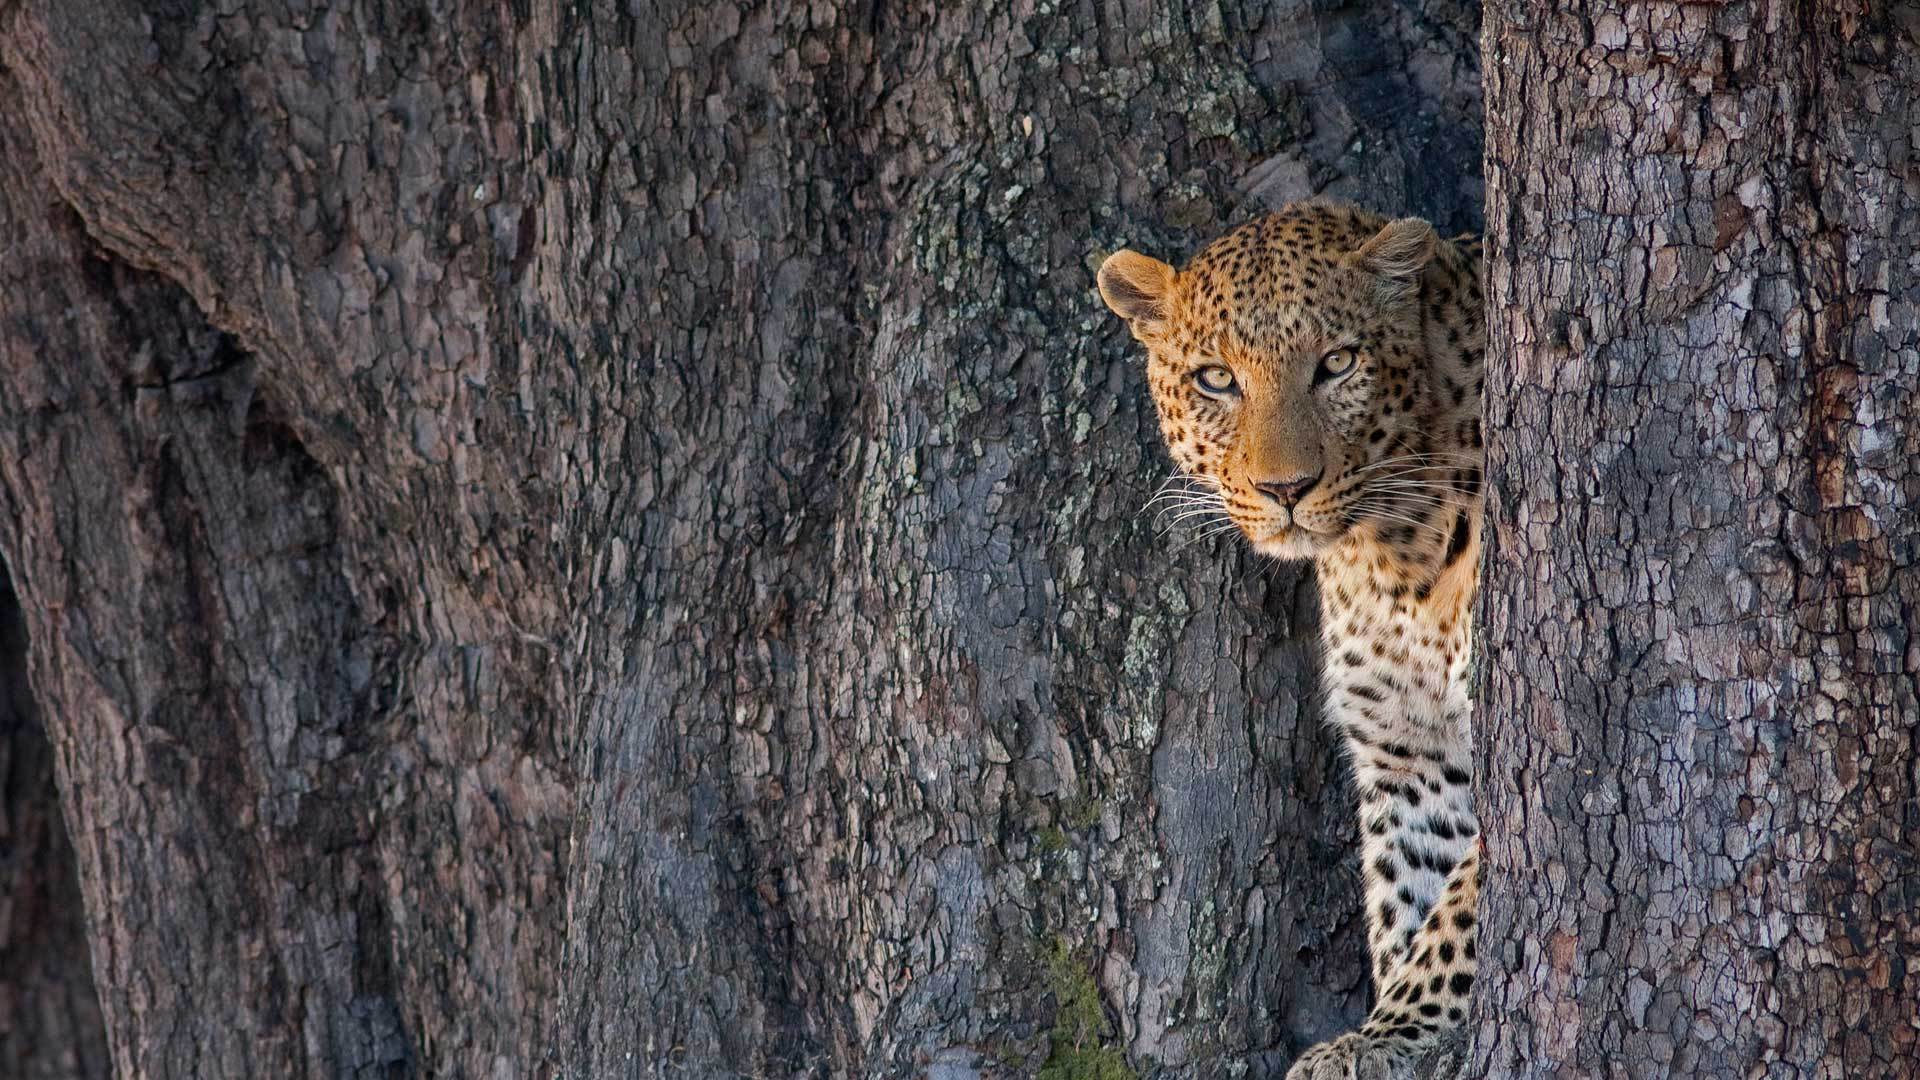 利尼扬蒂野生动物保护区中的一只雄性豹子豹-www.todaybing.com 必应壁纸 必应美图